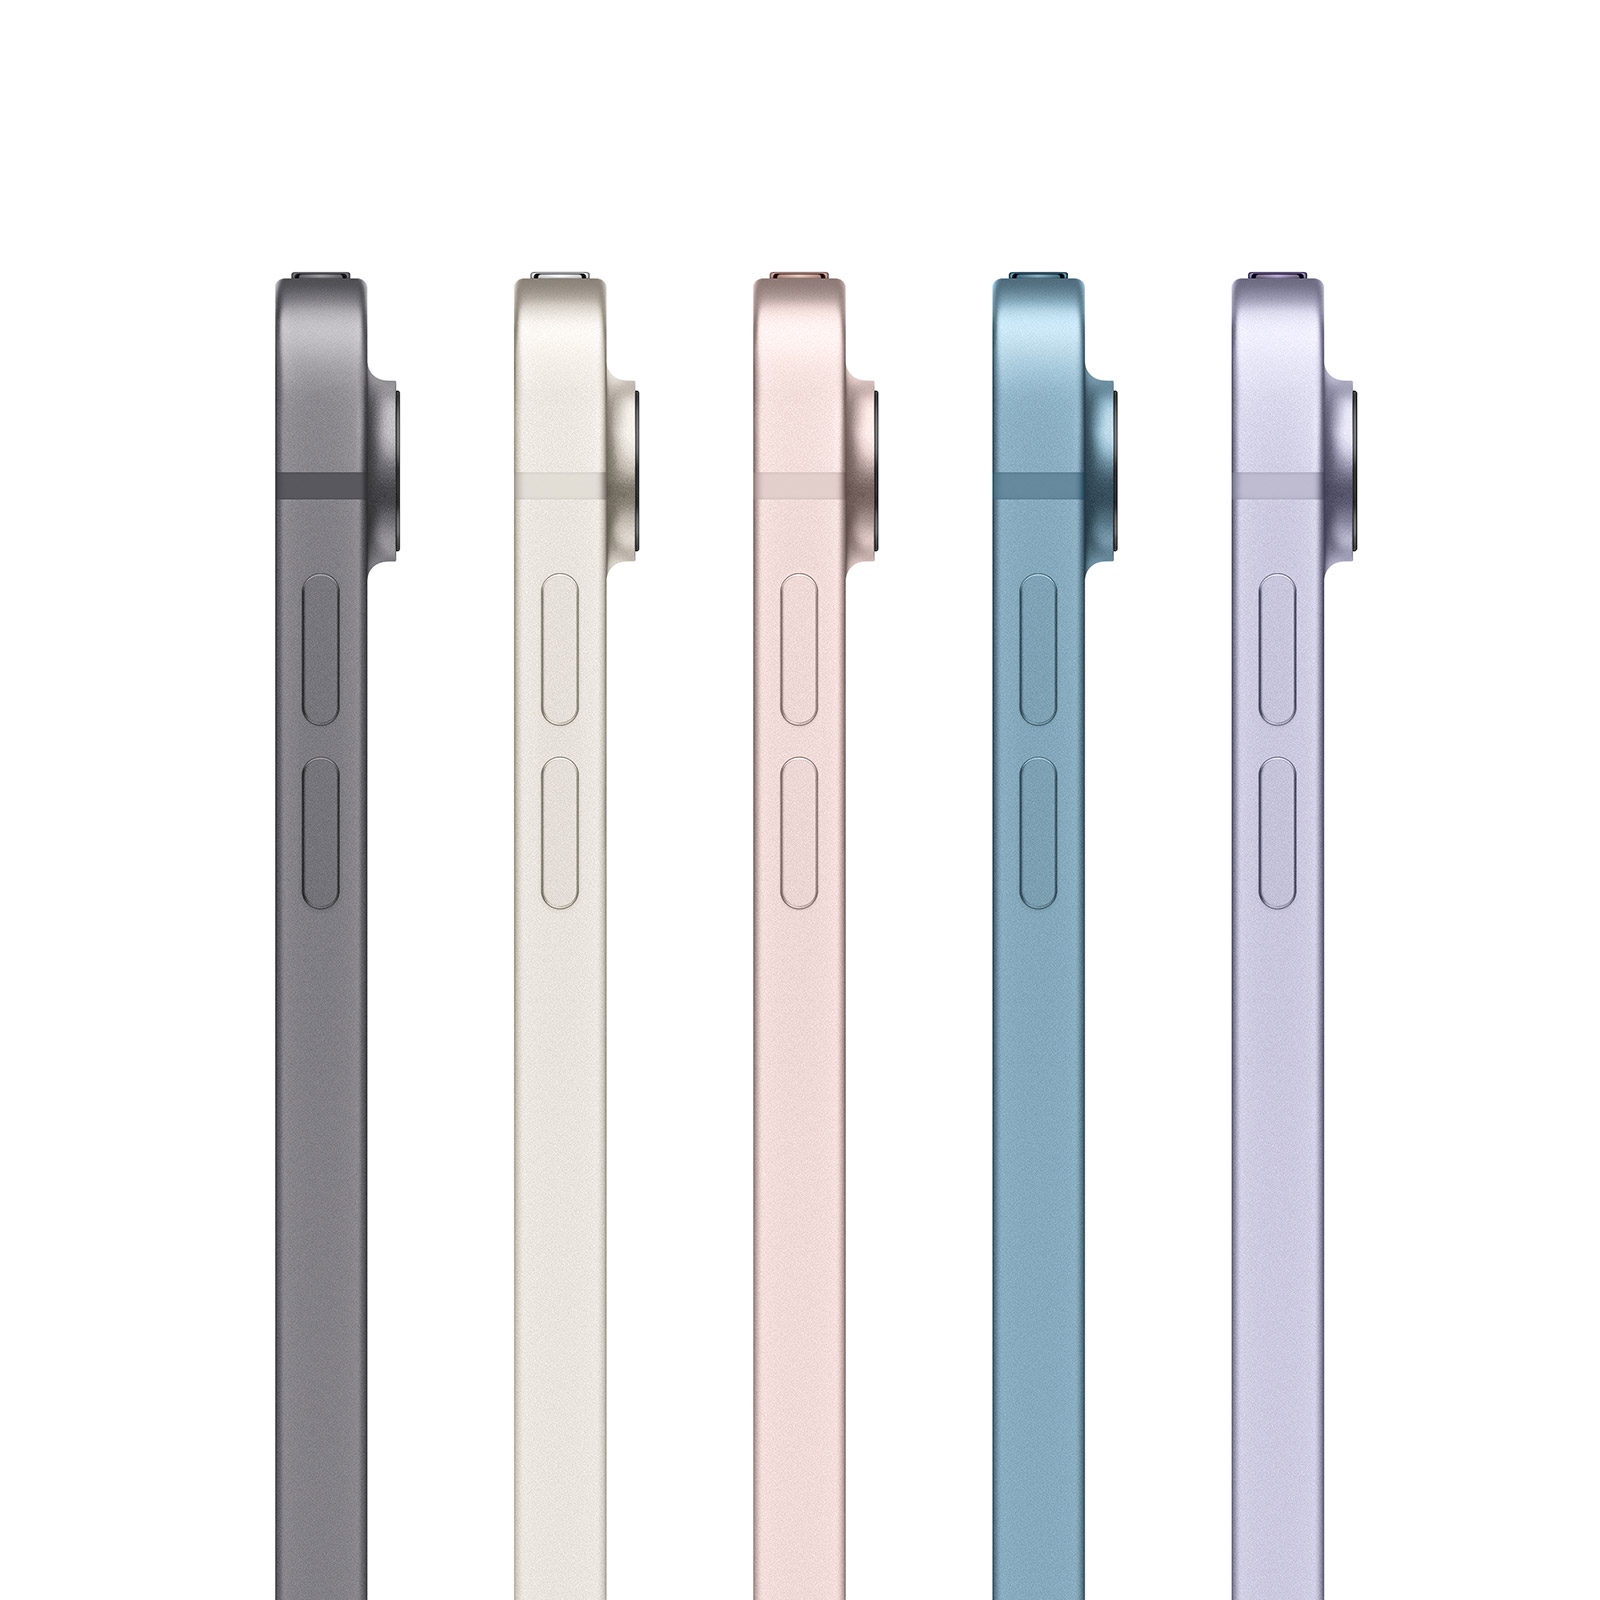 Apple-10-9-iPad-Air-WiFi-Cellular-256-GB-Blau-2022-08.jpg